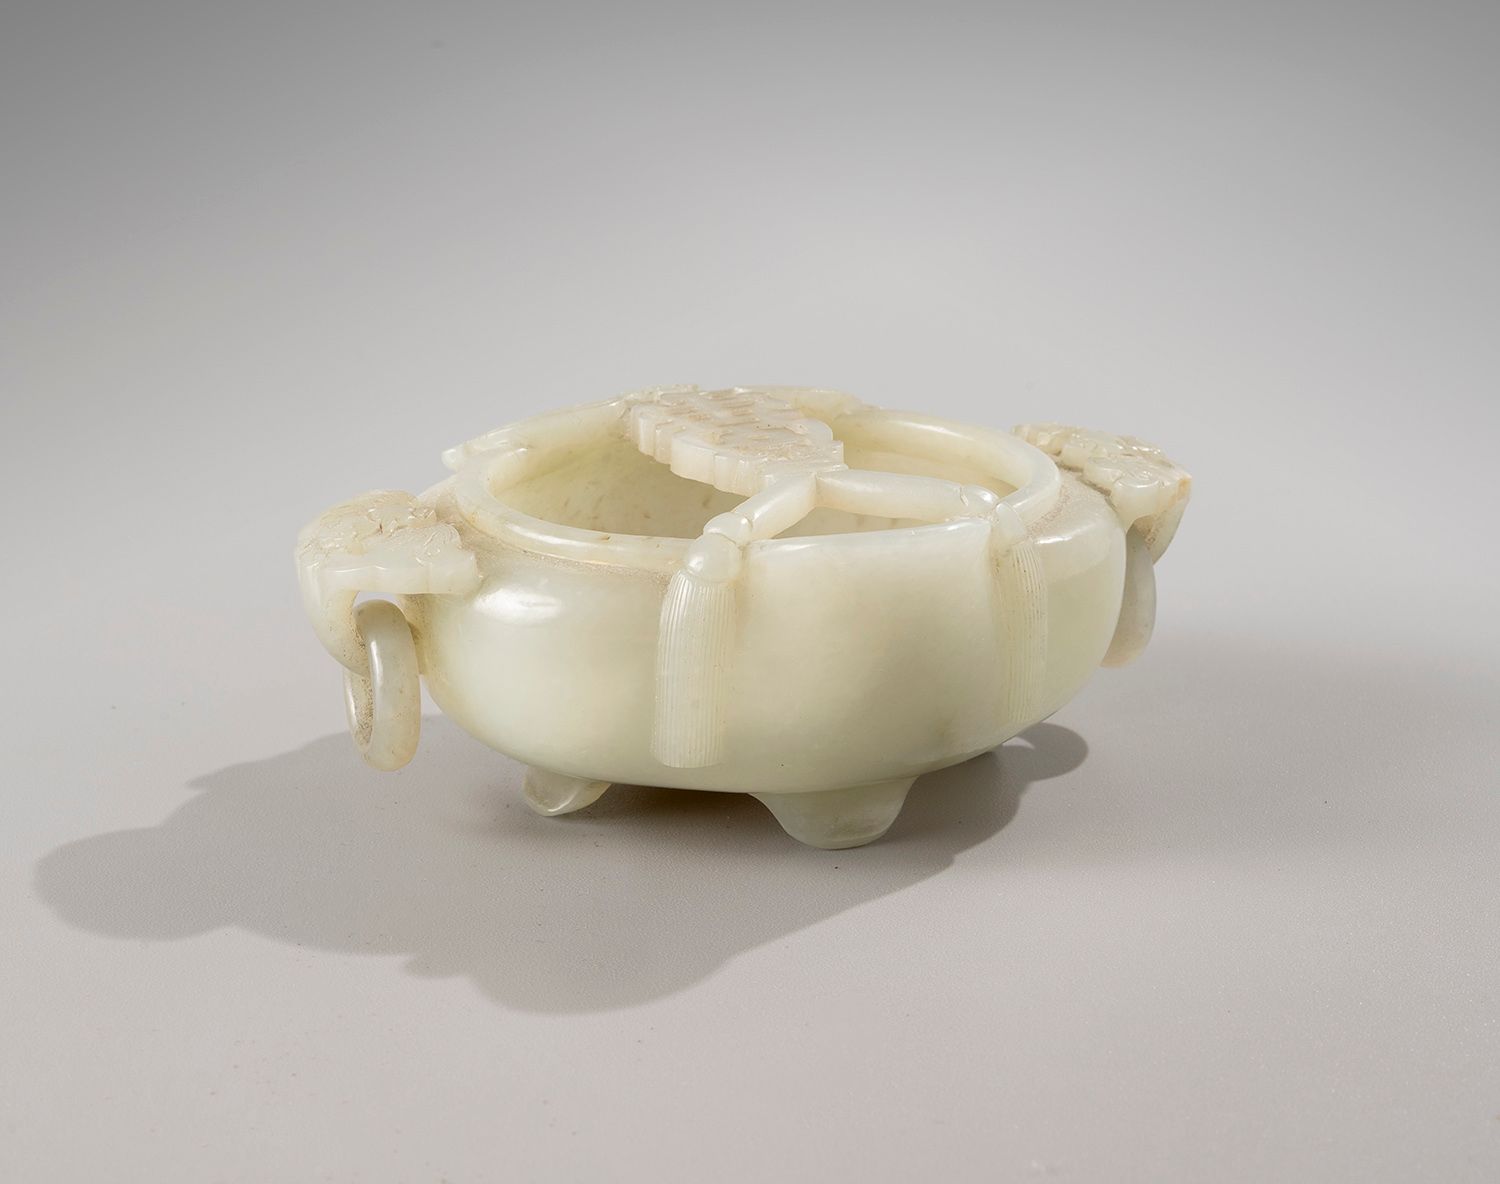 Null 中国，18世纪

寿桃形的青瓷玉碗

饰有蝙蝠的长寿桃。

寿字，并形成握住移动的手柄

手机铃声。

长11,3厘米 - 高4,4厘米

标签为 "&hellip;